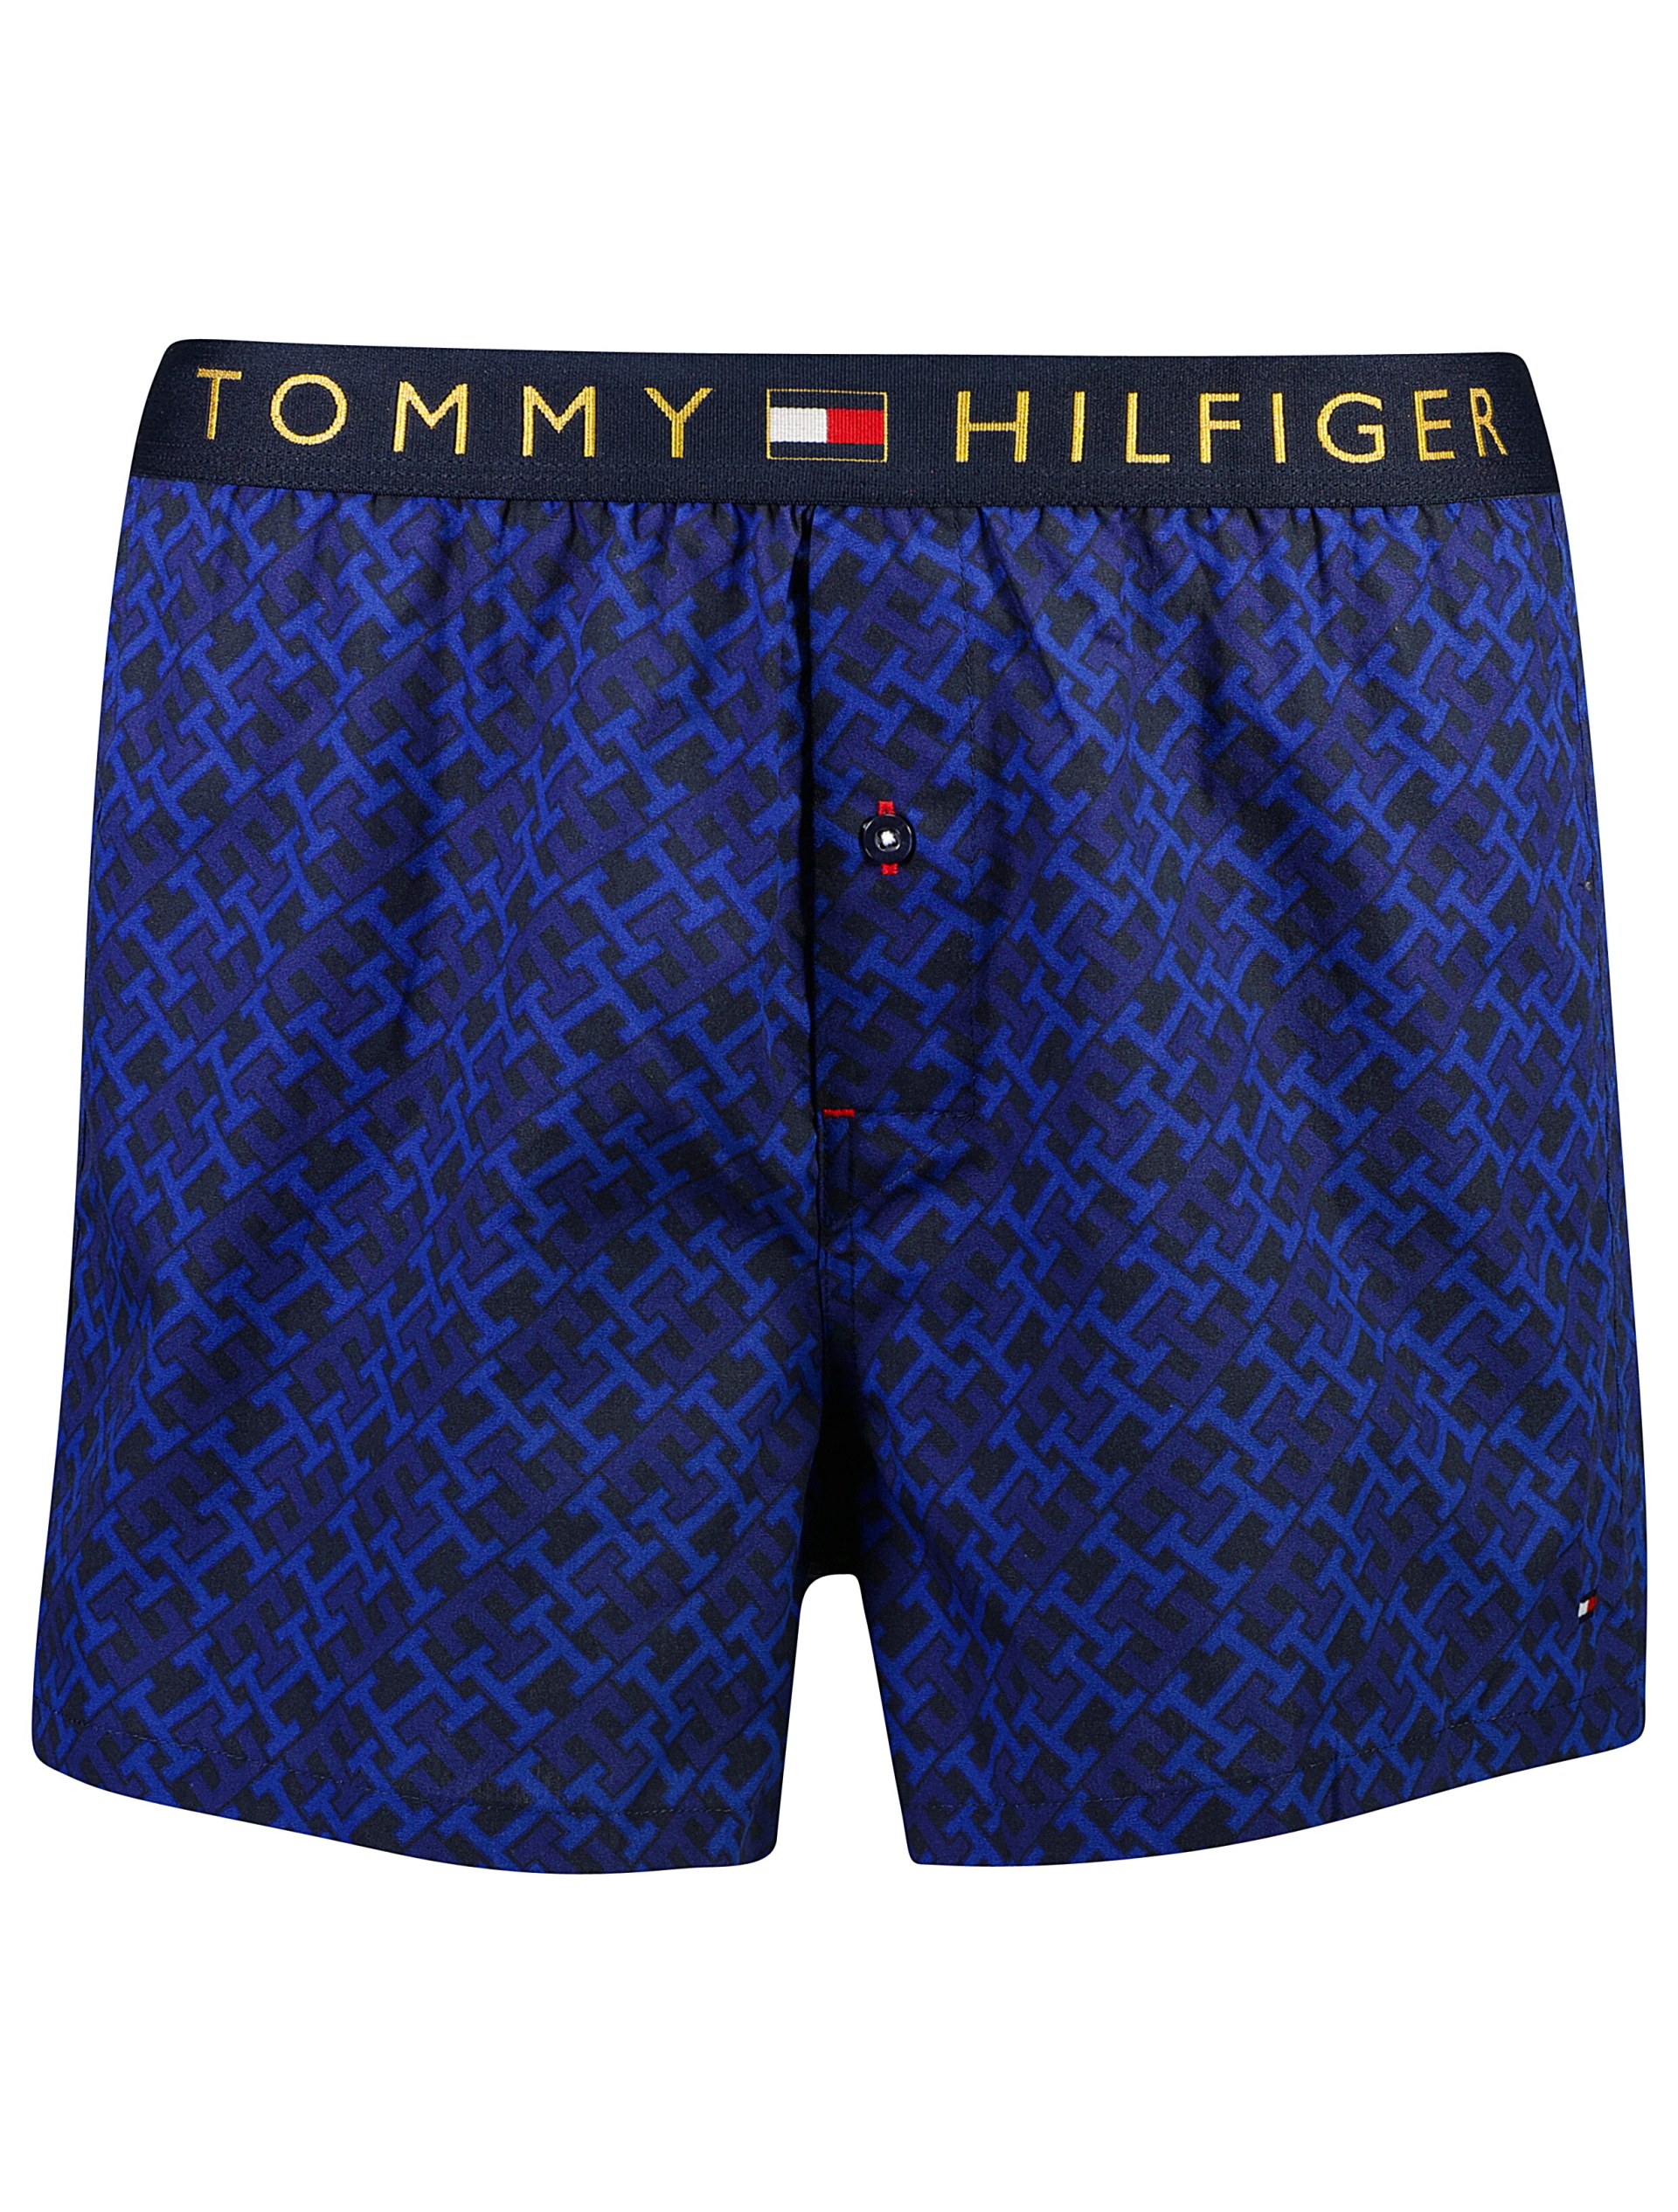 Tommy Hilfiger Boxershorts blå / 0kg navy